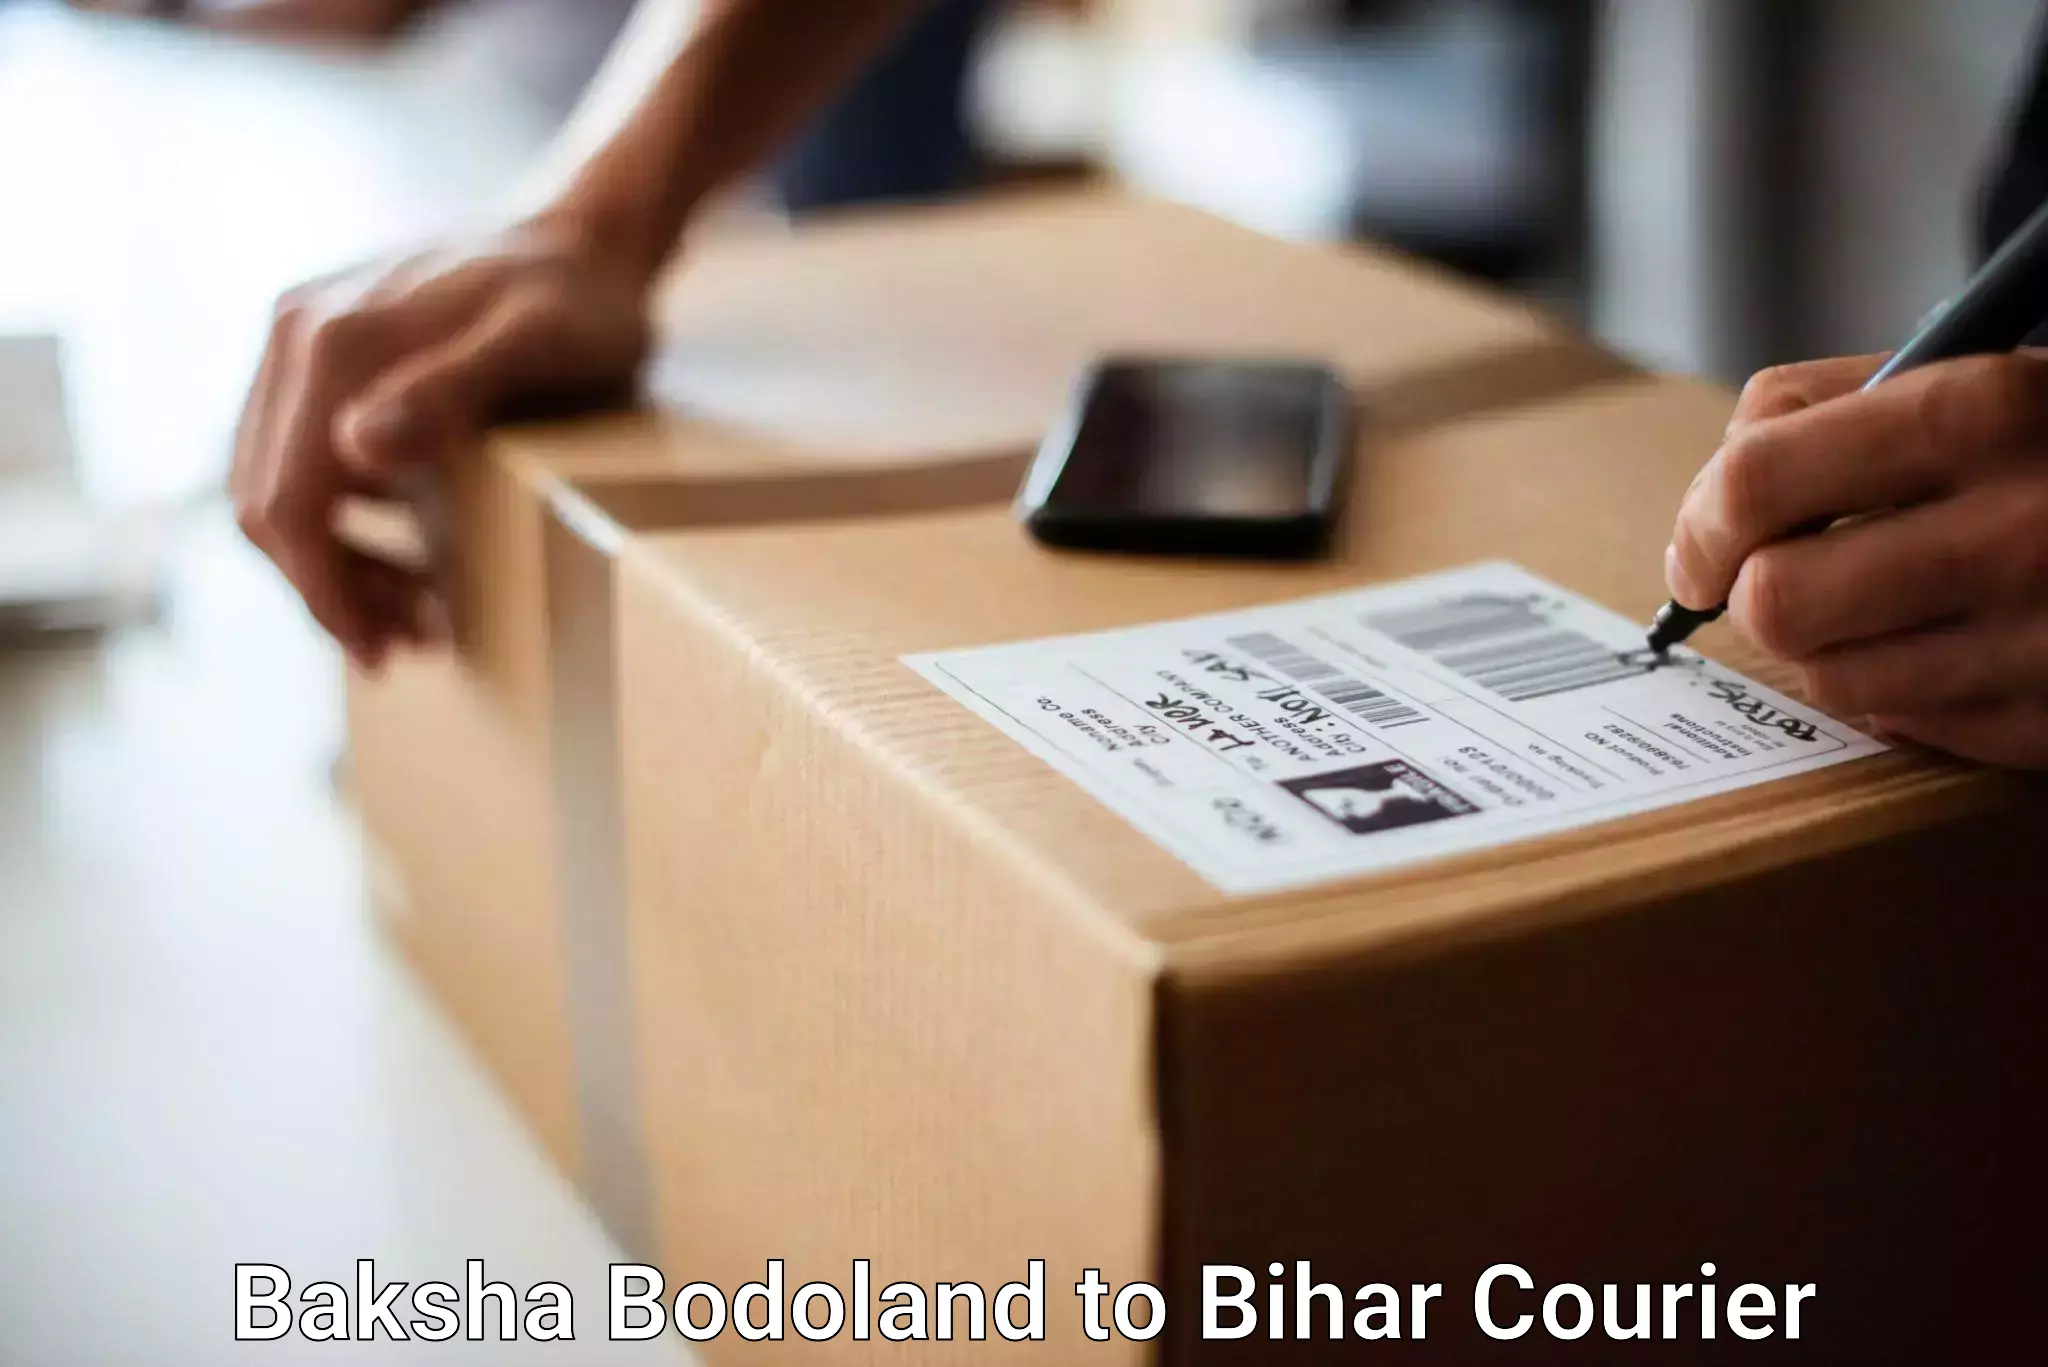 Luggage shipment processing Baksha Bodoland to Nuaon